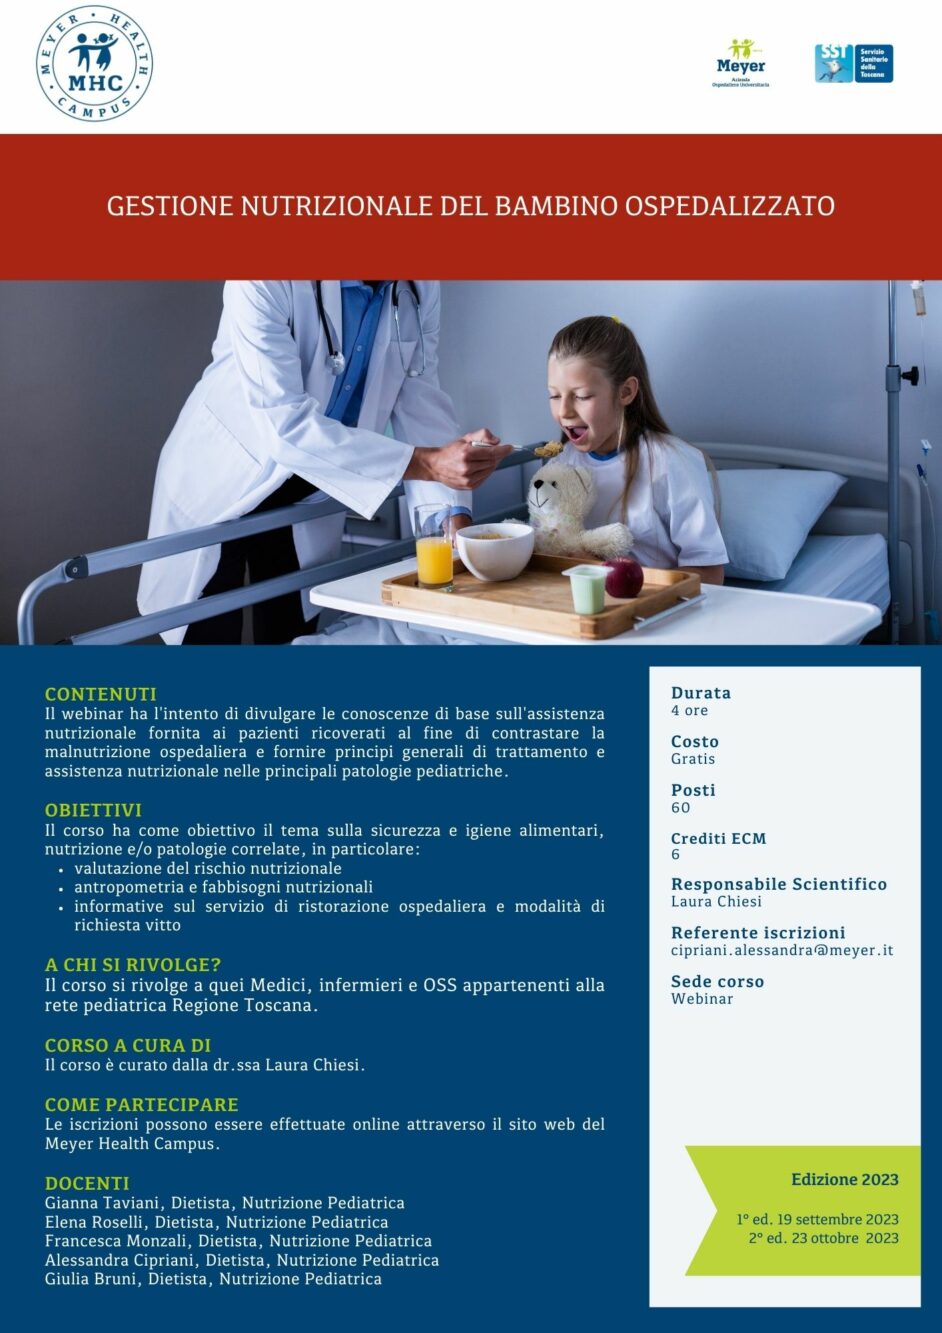 Gestione nutrizionale del bambino ospedalizzato (23 ottobre 2023)